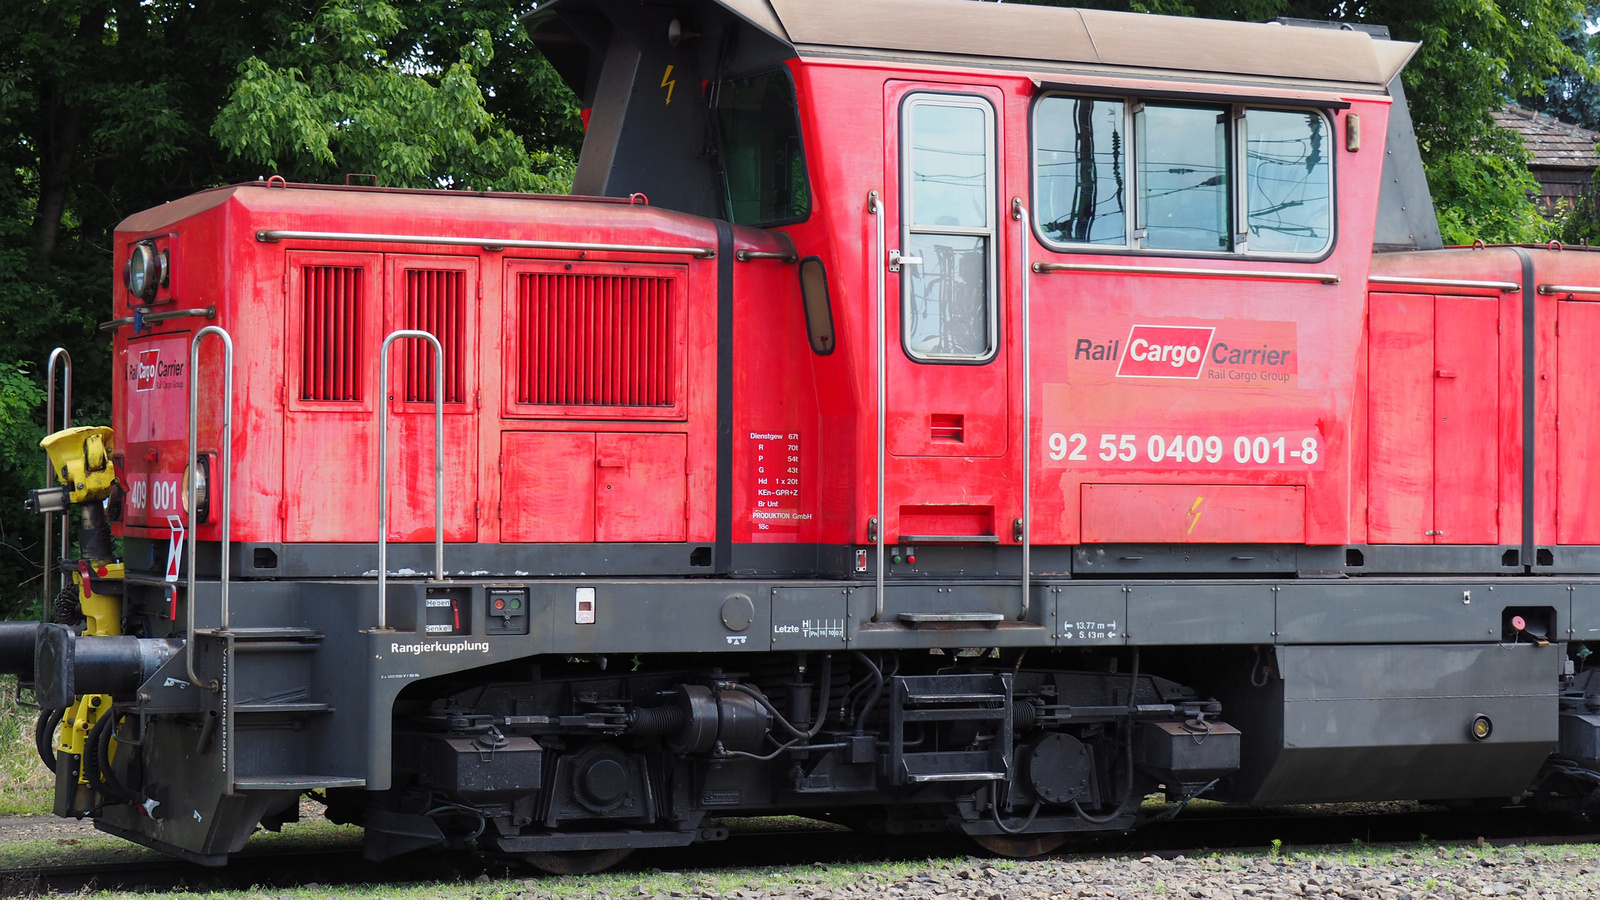 Rail Cargo Carrier 92 55 0409 001-8, SZG3